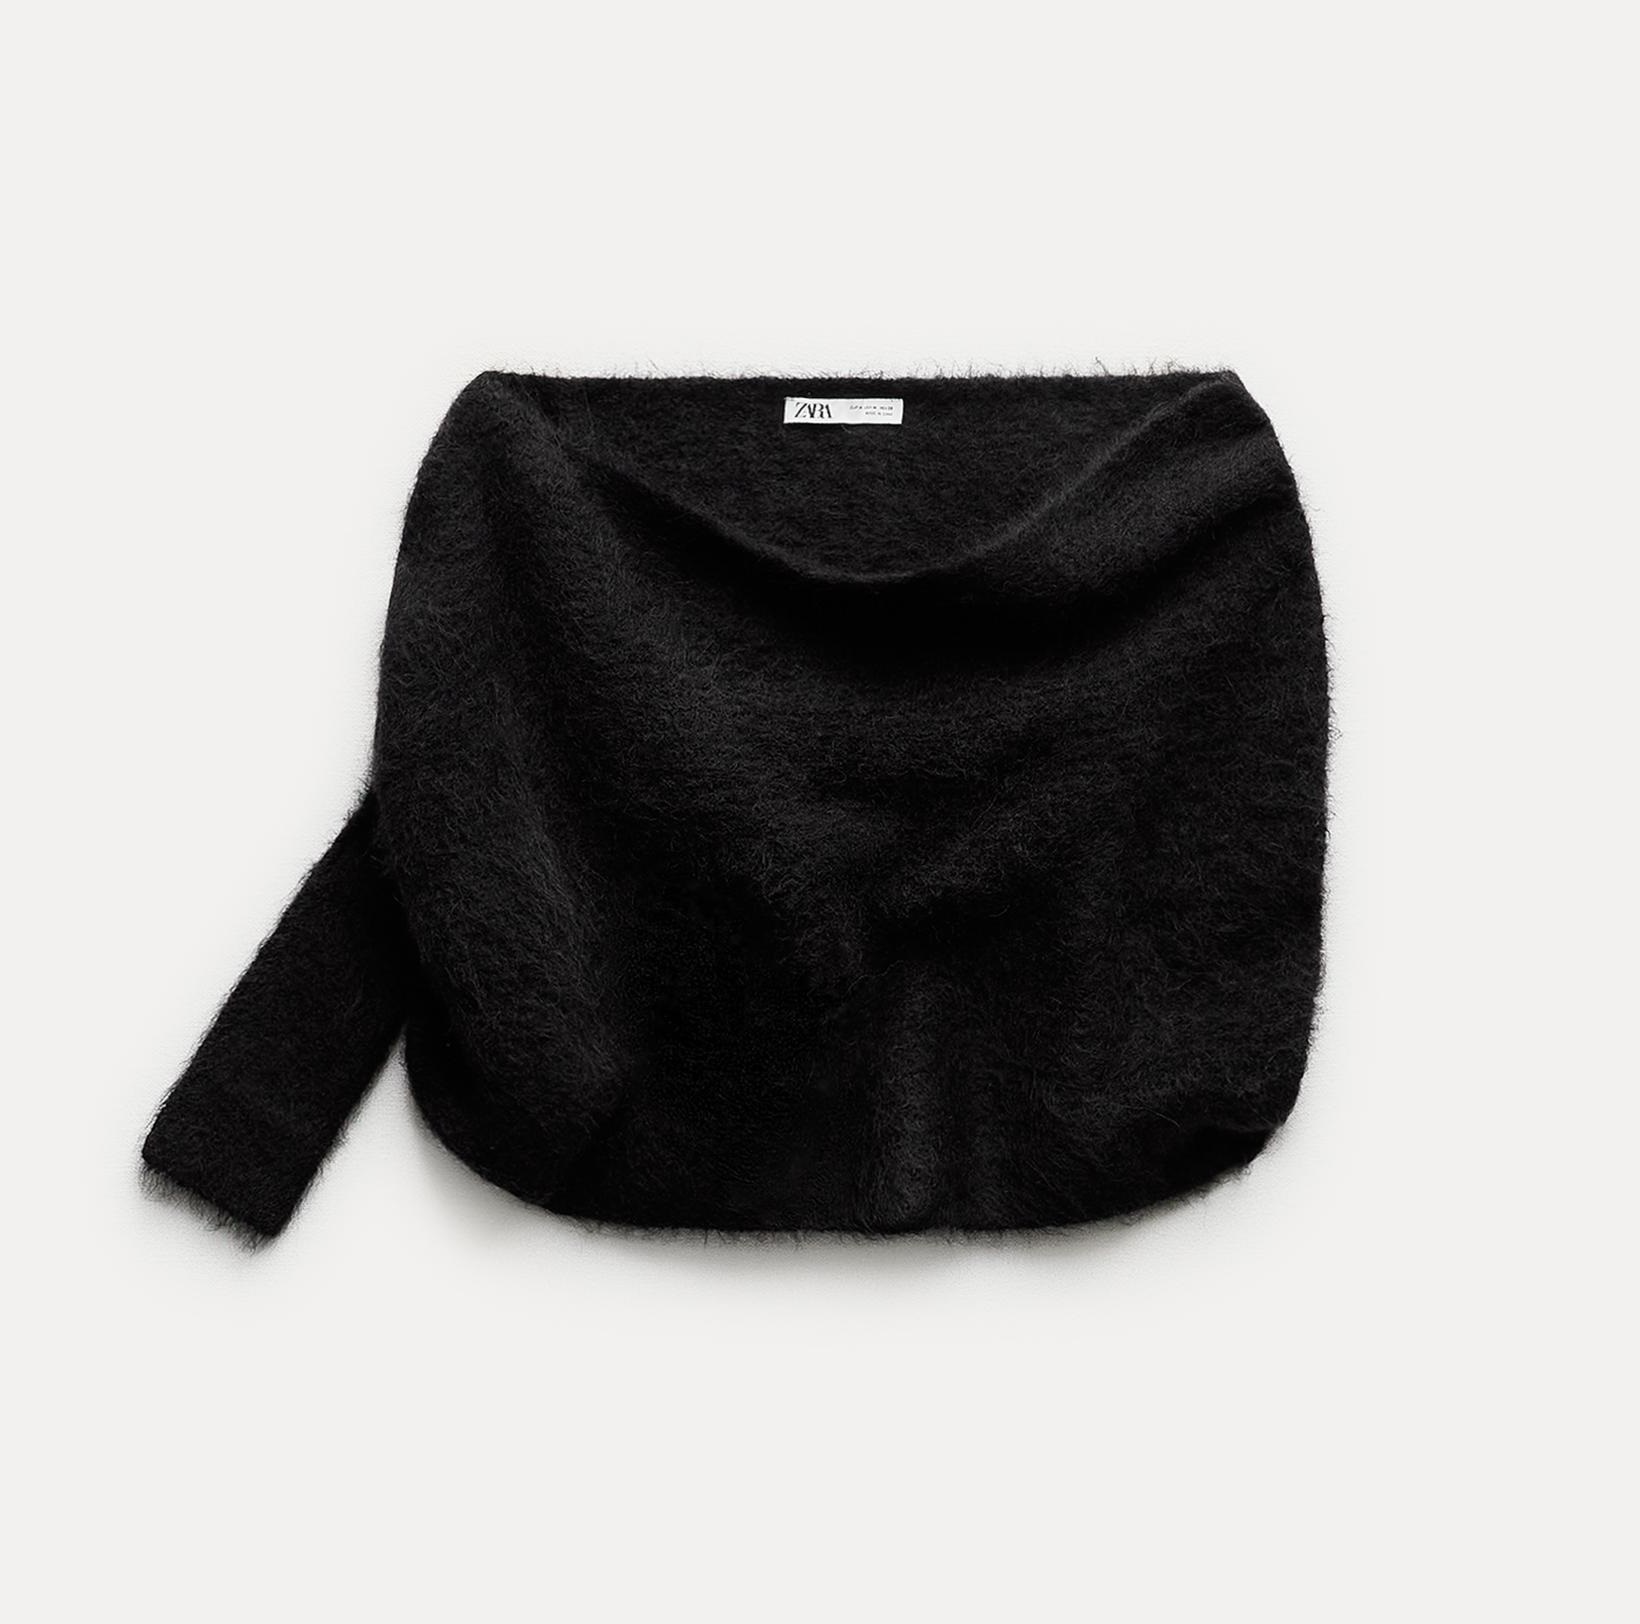 Джемпер Zara Alpaca Blend Asymmetric Knit Bolero Cape, черный выкройка vogue 9045 болеро накидка